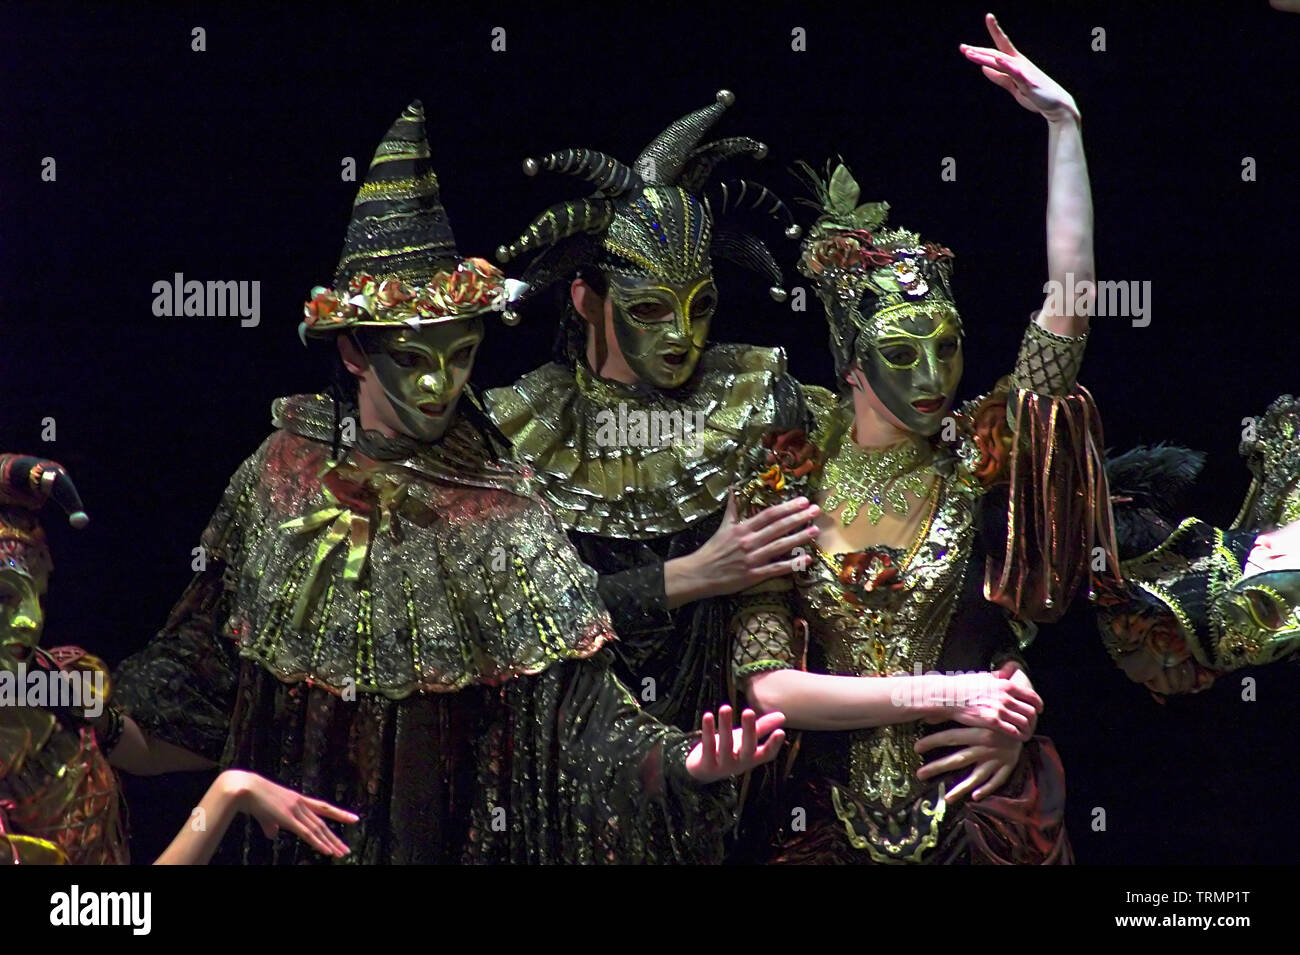 Dancers in Venetian masks - an unknown ballet performance. Tänzer in venezianischen Masken - eine unbekannte Ballettaufführung.Tancerze w maskach. Stock Photo